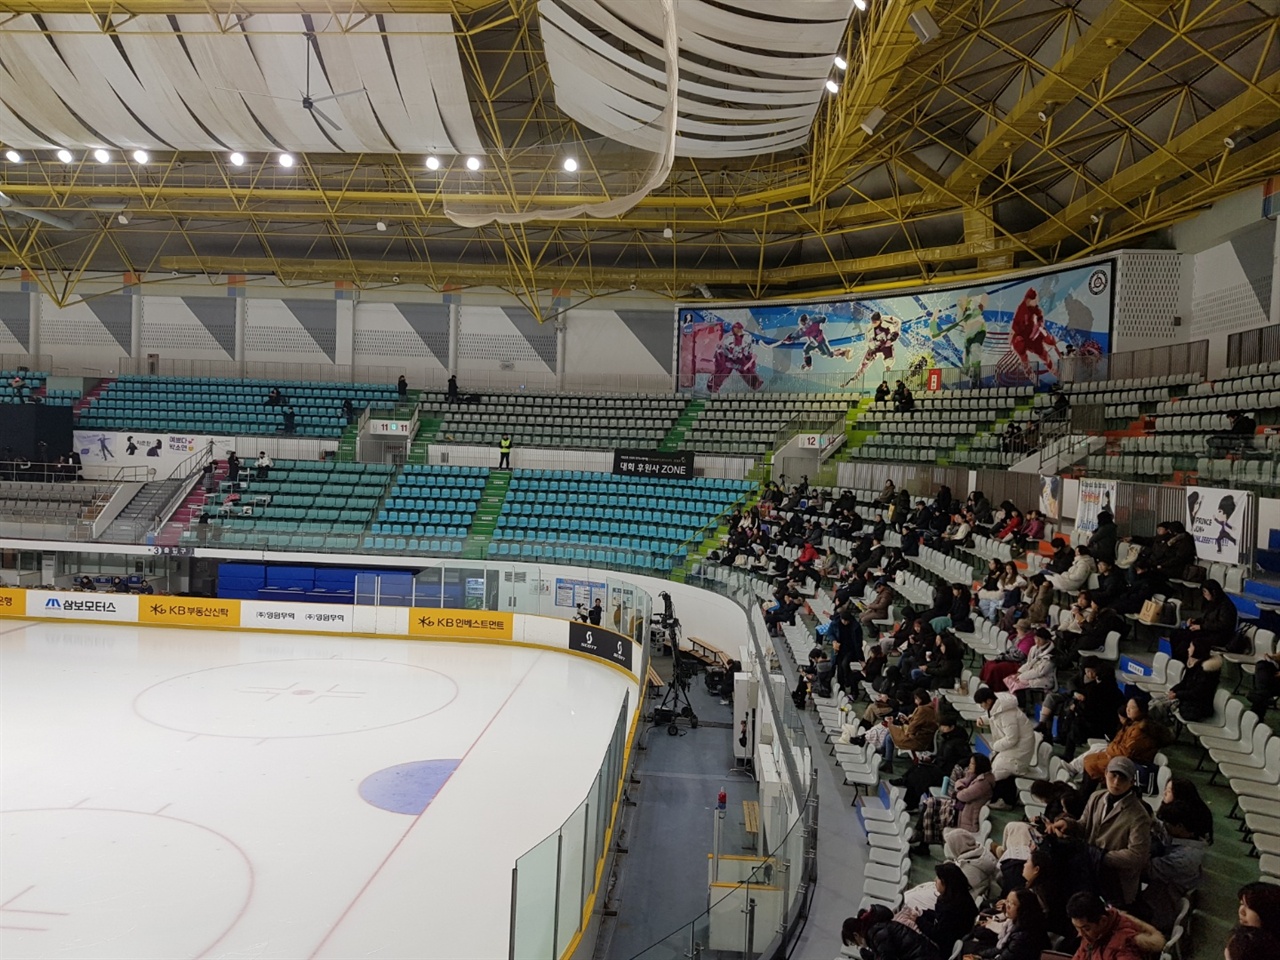  지난 13일 서울 목동 아이스링크에서 열렸던 KB금융 코리아 피겨스케이팅 챔피언십 2019 대회. 정면석 왼쪽 코너 부근에 후원사존이 마련돼 있지만 어느 누구도 앉은 사람은 없다. 사실상 무용지물이었던 셈이었다. 